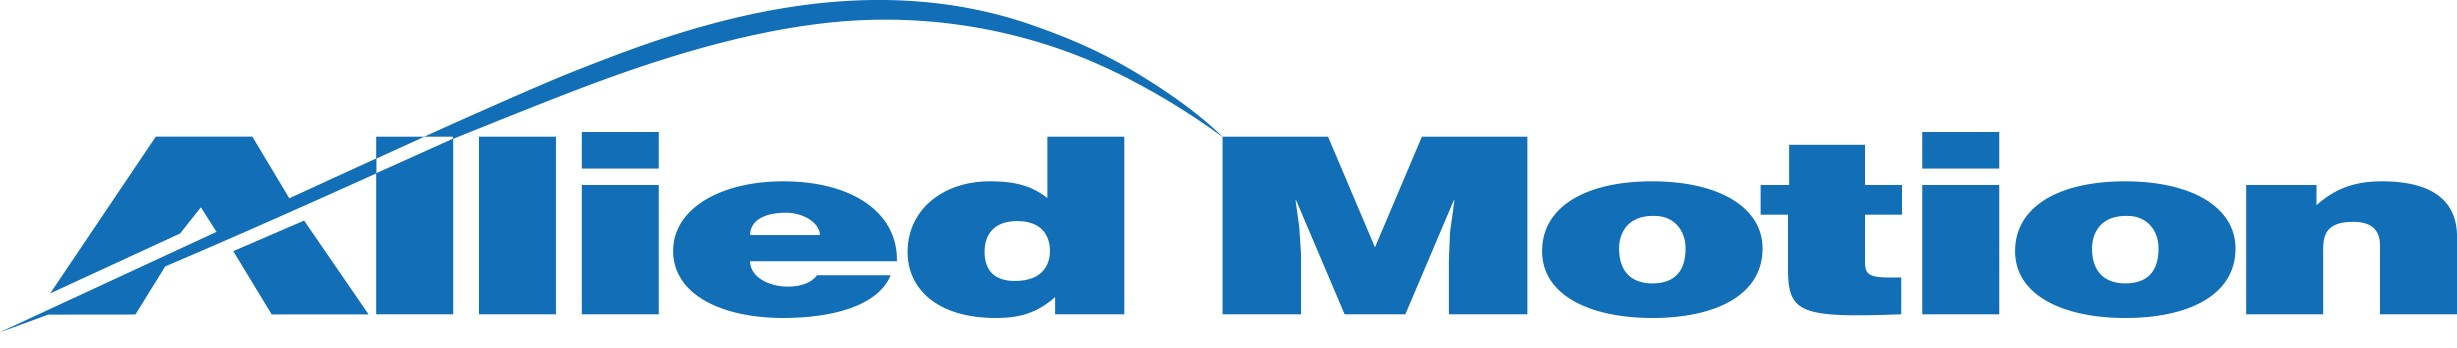 https://mms.businesswire.com/media/20220420005988/en/1427059/5/Allied_Motion_Logo.jpg 